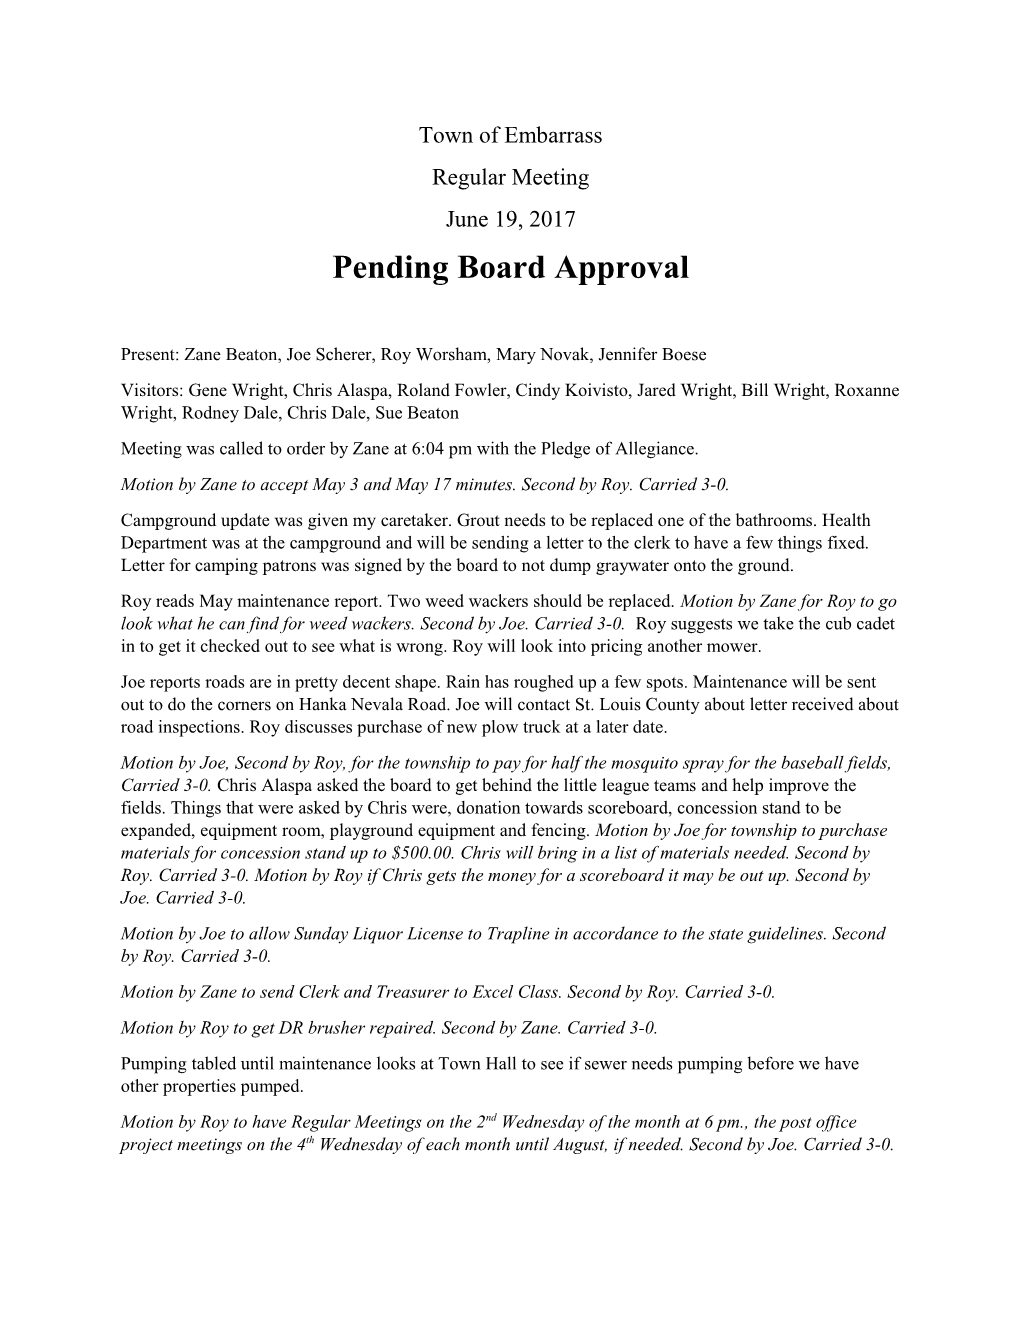 Pending Board Approval